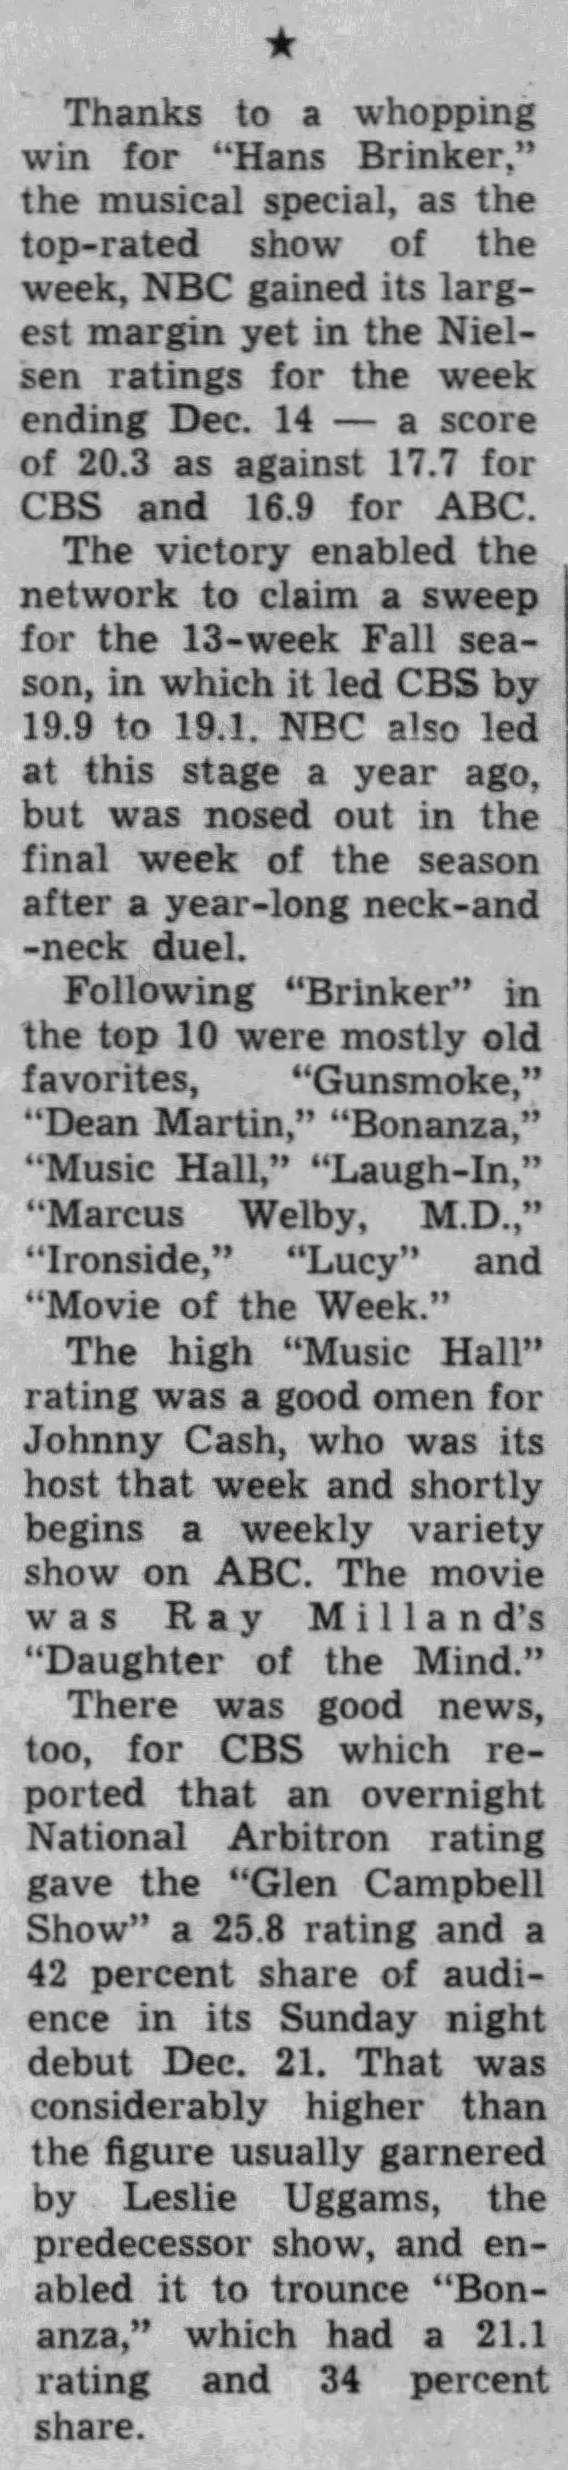 Nielsen ratings week of December 8th-14th, 1969